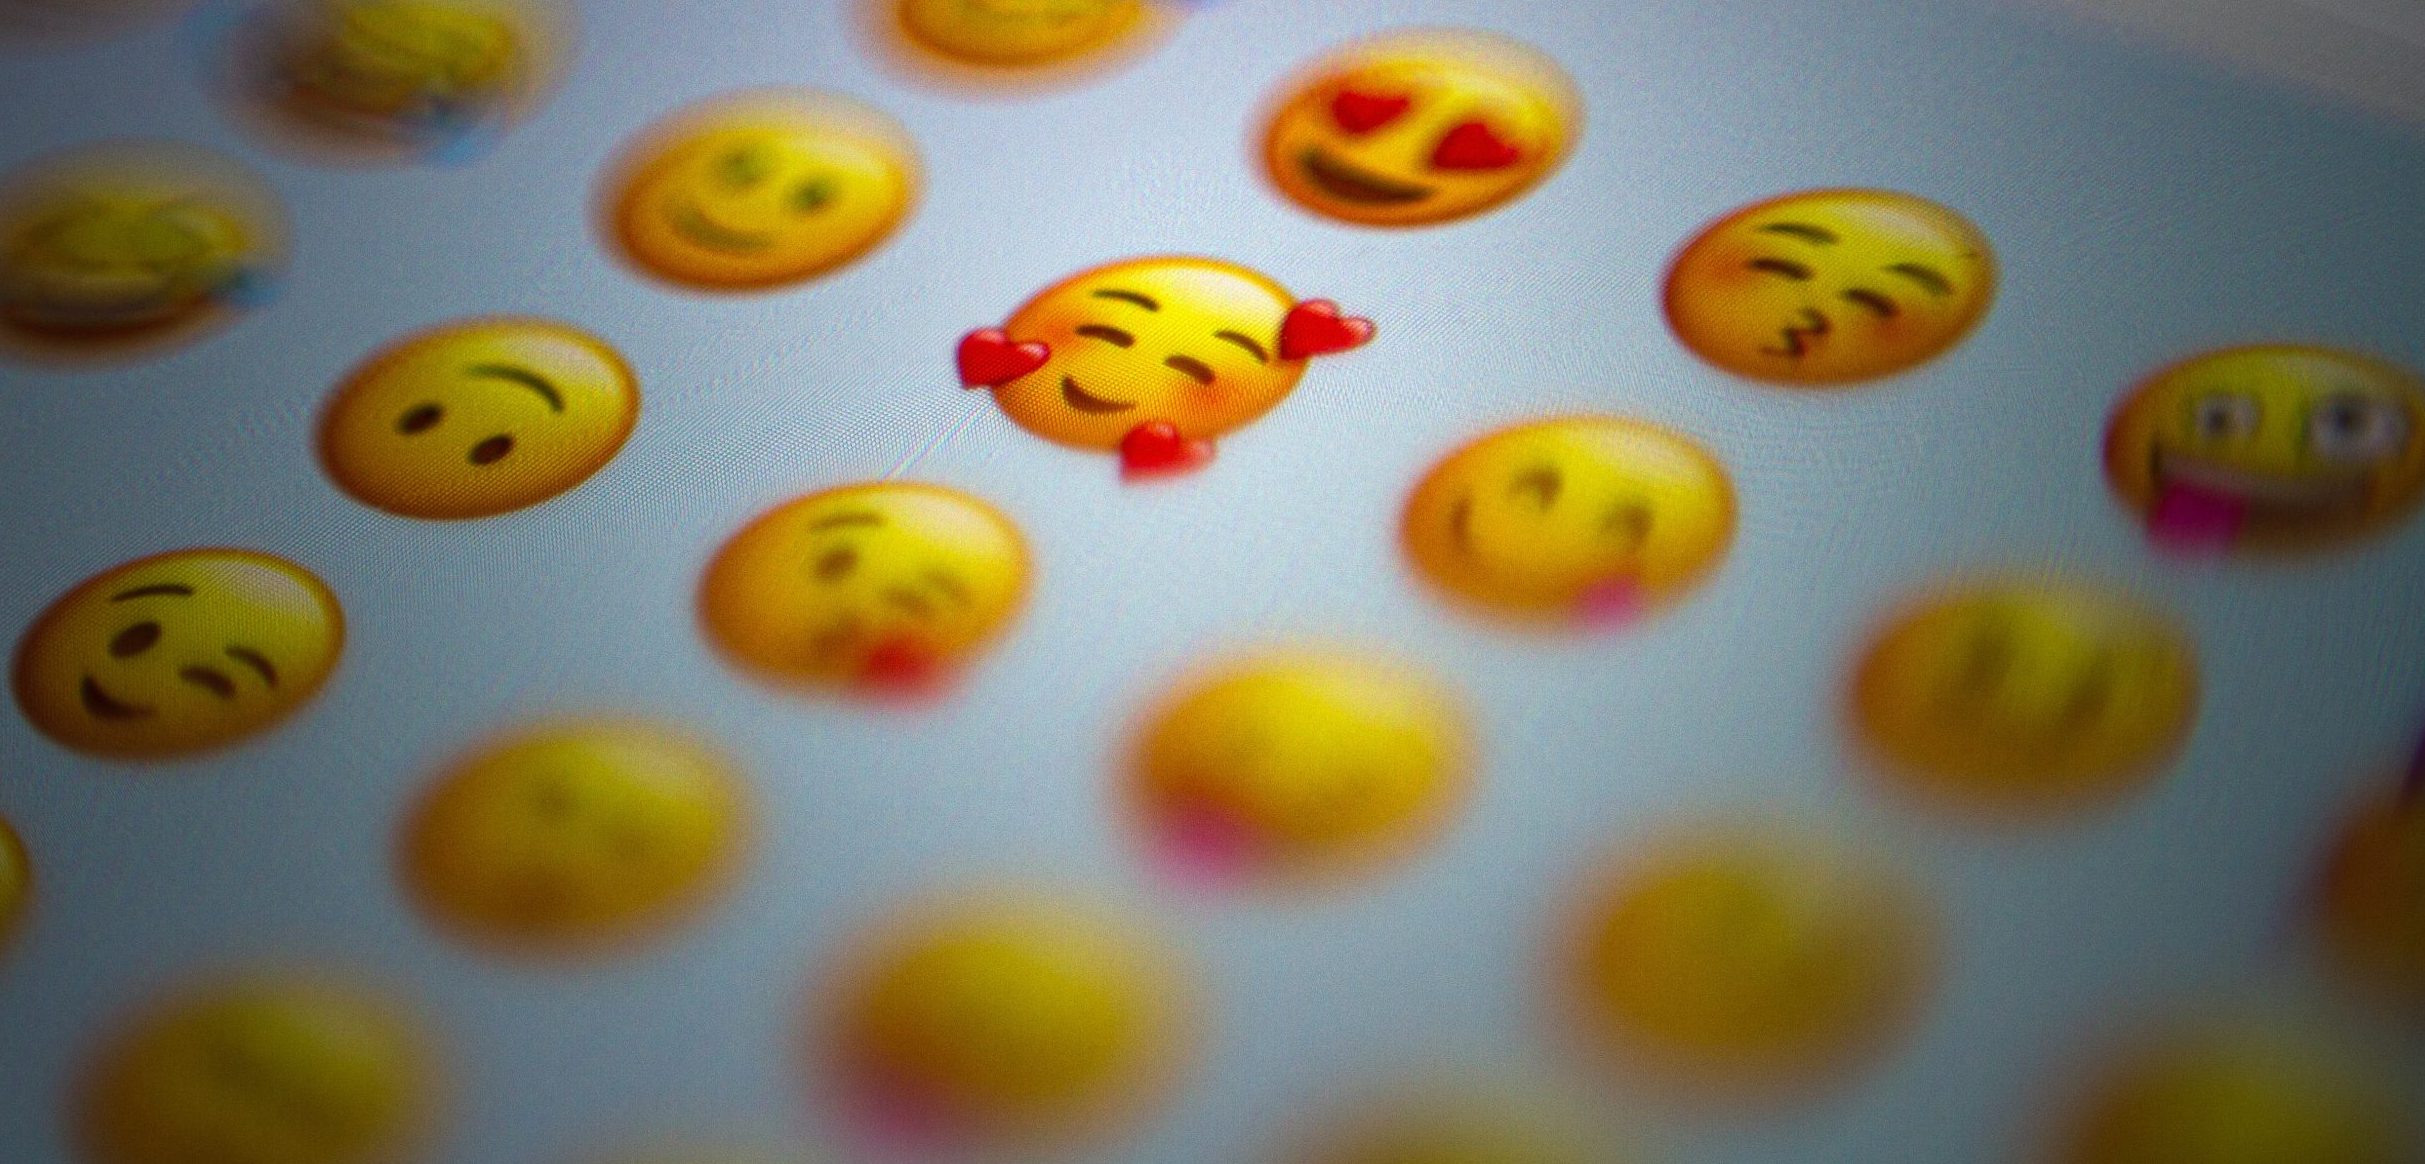 Emojies on screen